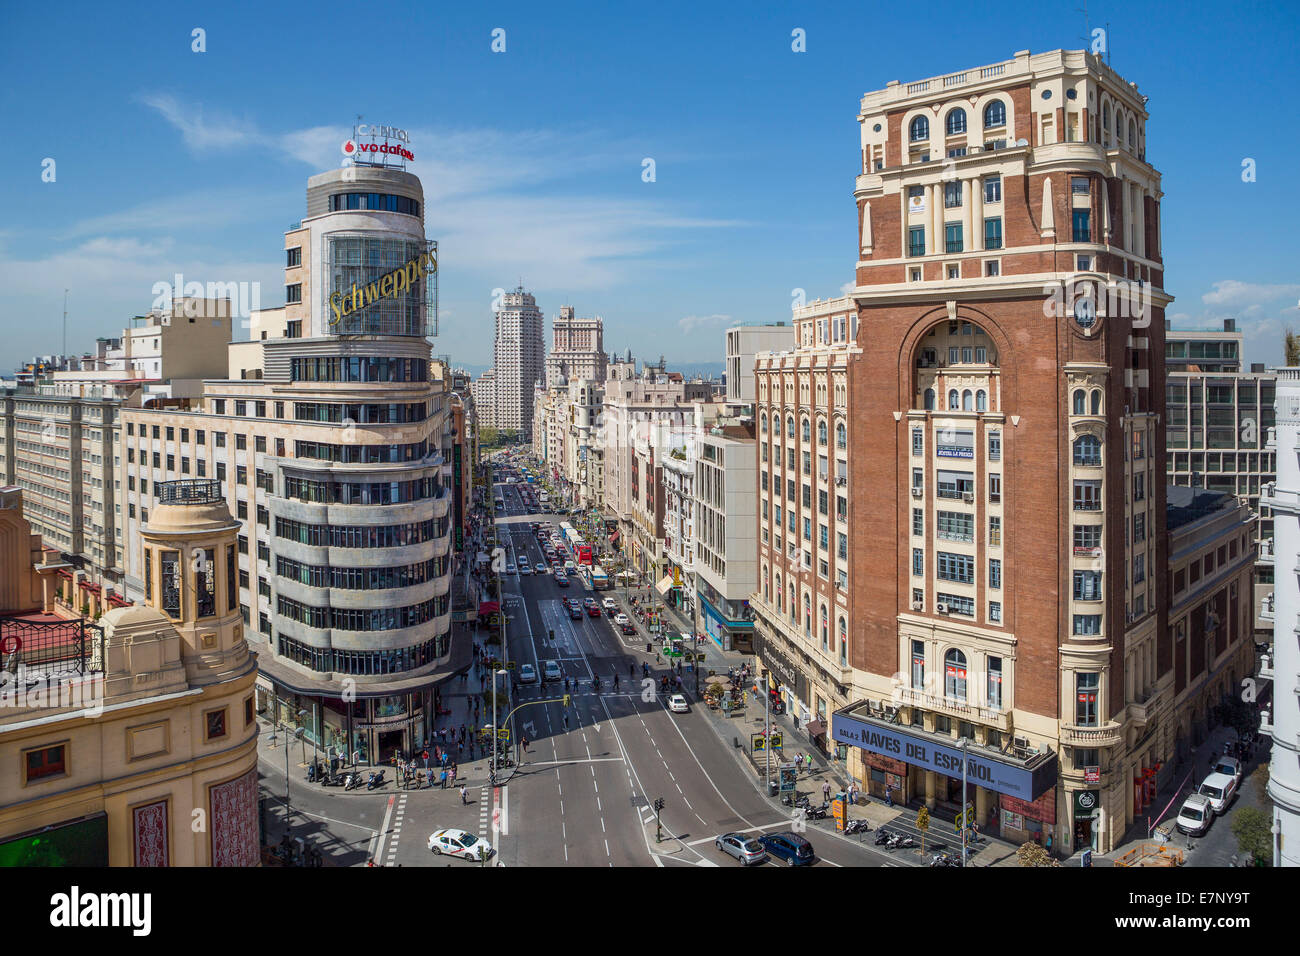 Avenue, Callao, ville, Gran Via, Madrid, Espagne, Europe, Square, l'architecture, le centre-ville, le modernisme, le tourisme, voyages Banque D'Images